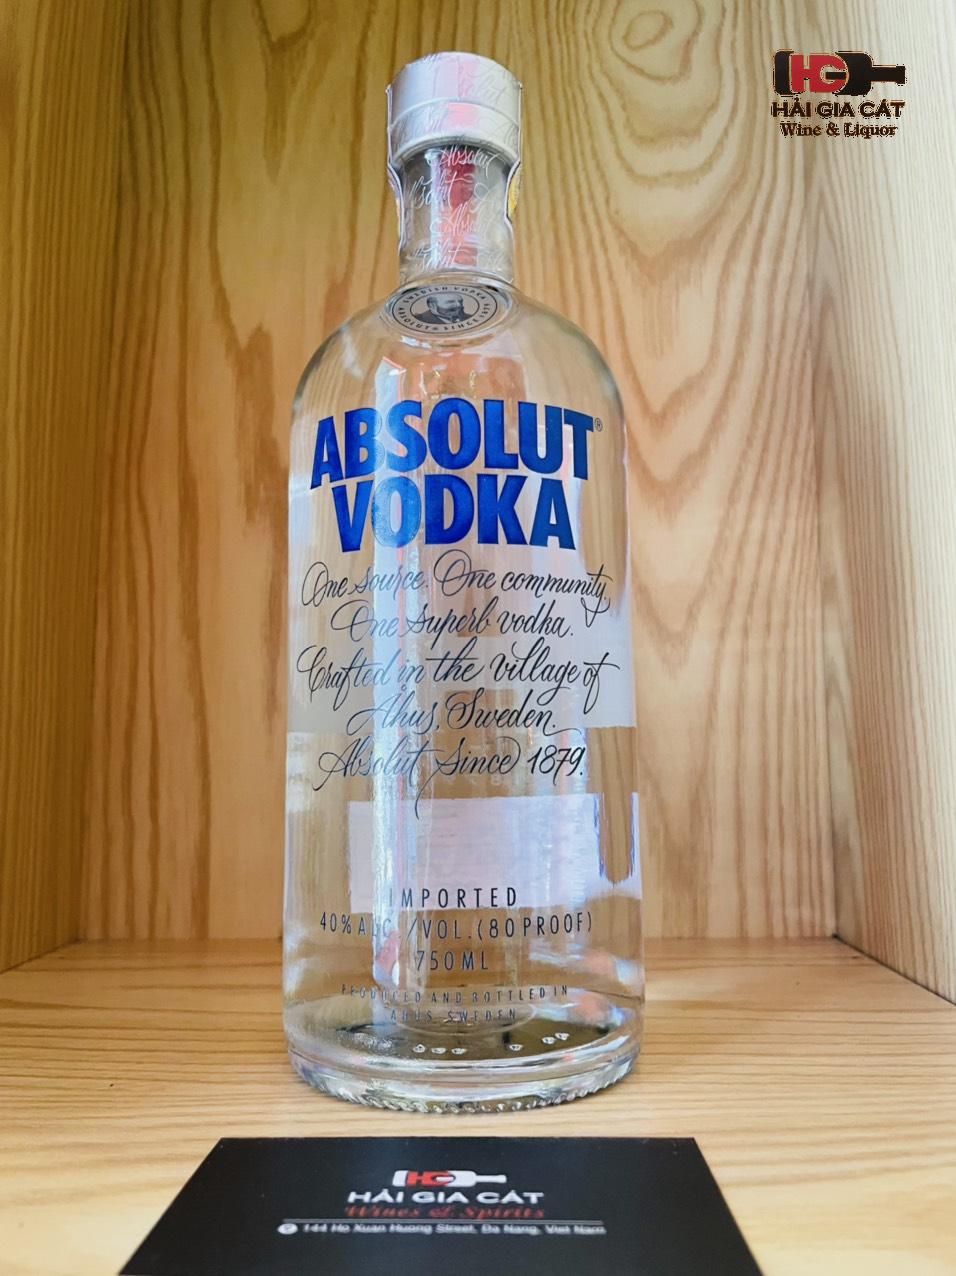 Rượu Absolut vodka chính hãng tại Hải Gia Cát